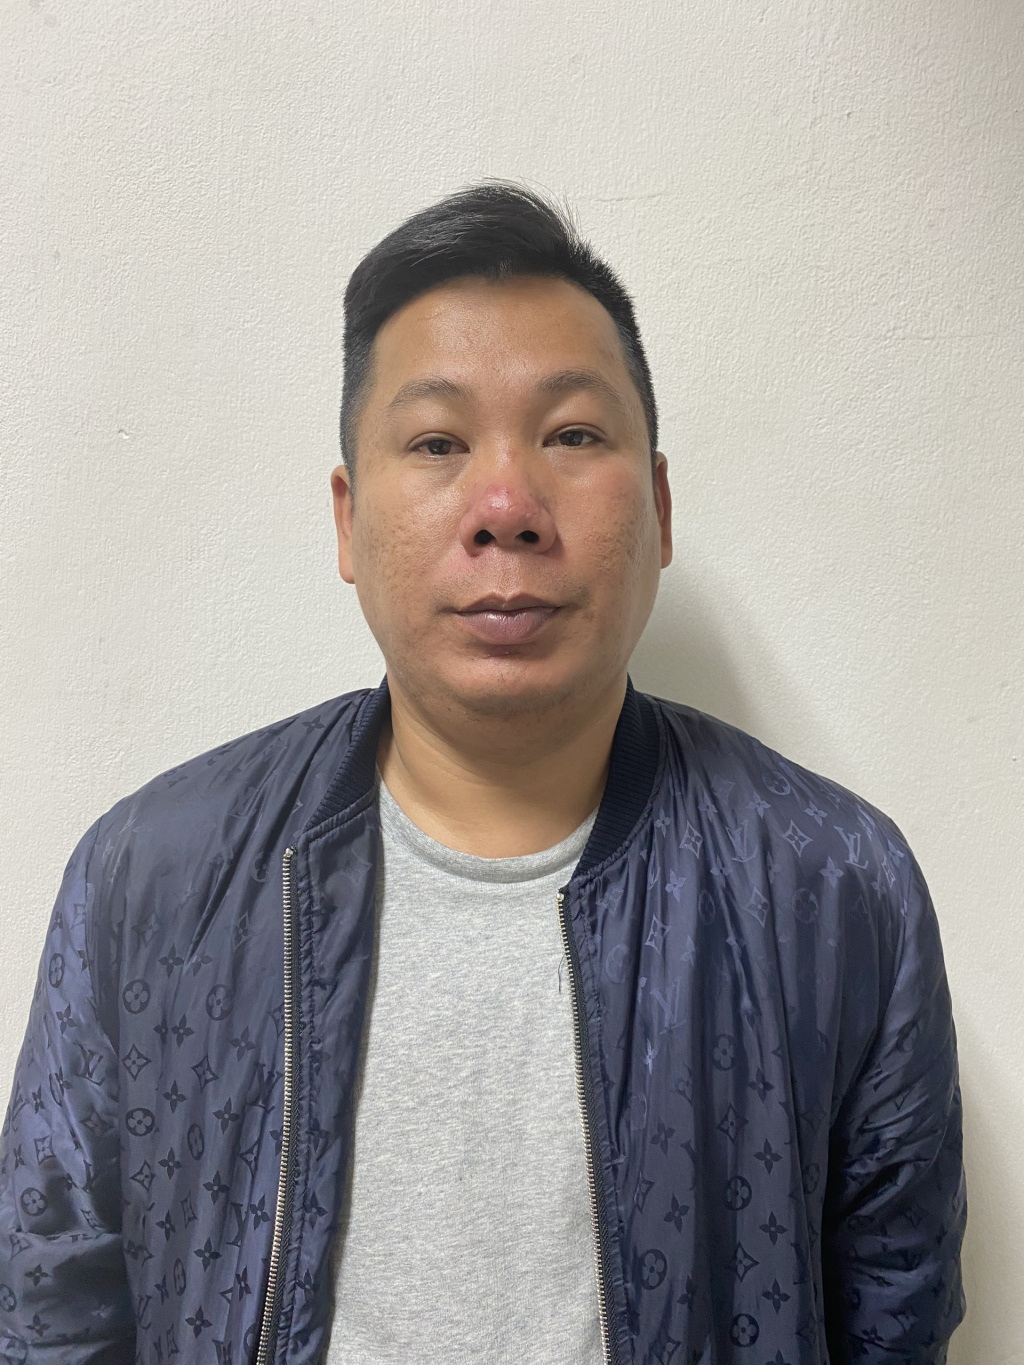 Đối tượng Nguyễn Mạnh Dũng bị Công an TP bắt giữ về hành vi cho vay lãi nặng trong giao dịch dân sự. Ảnh: Hoàng Tân (CTV)